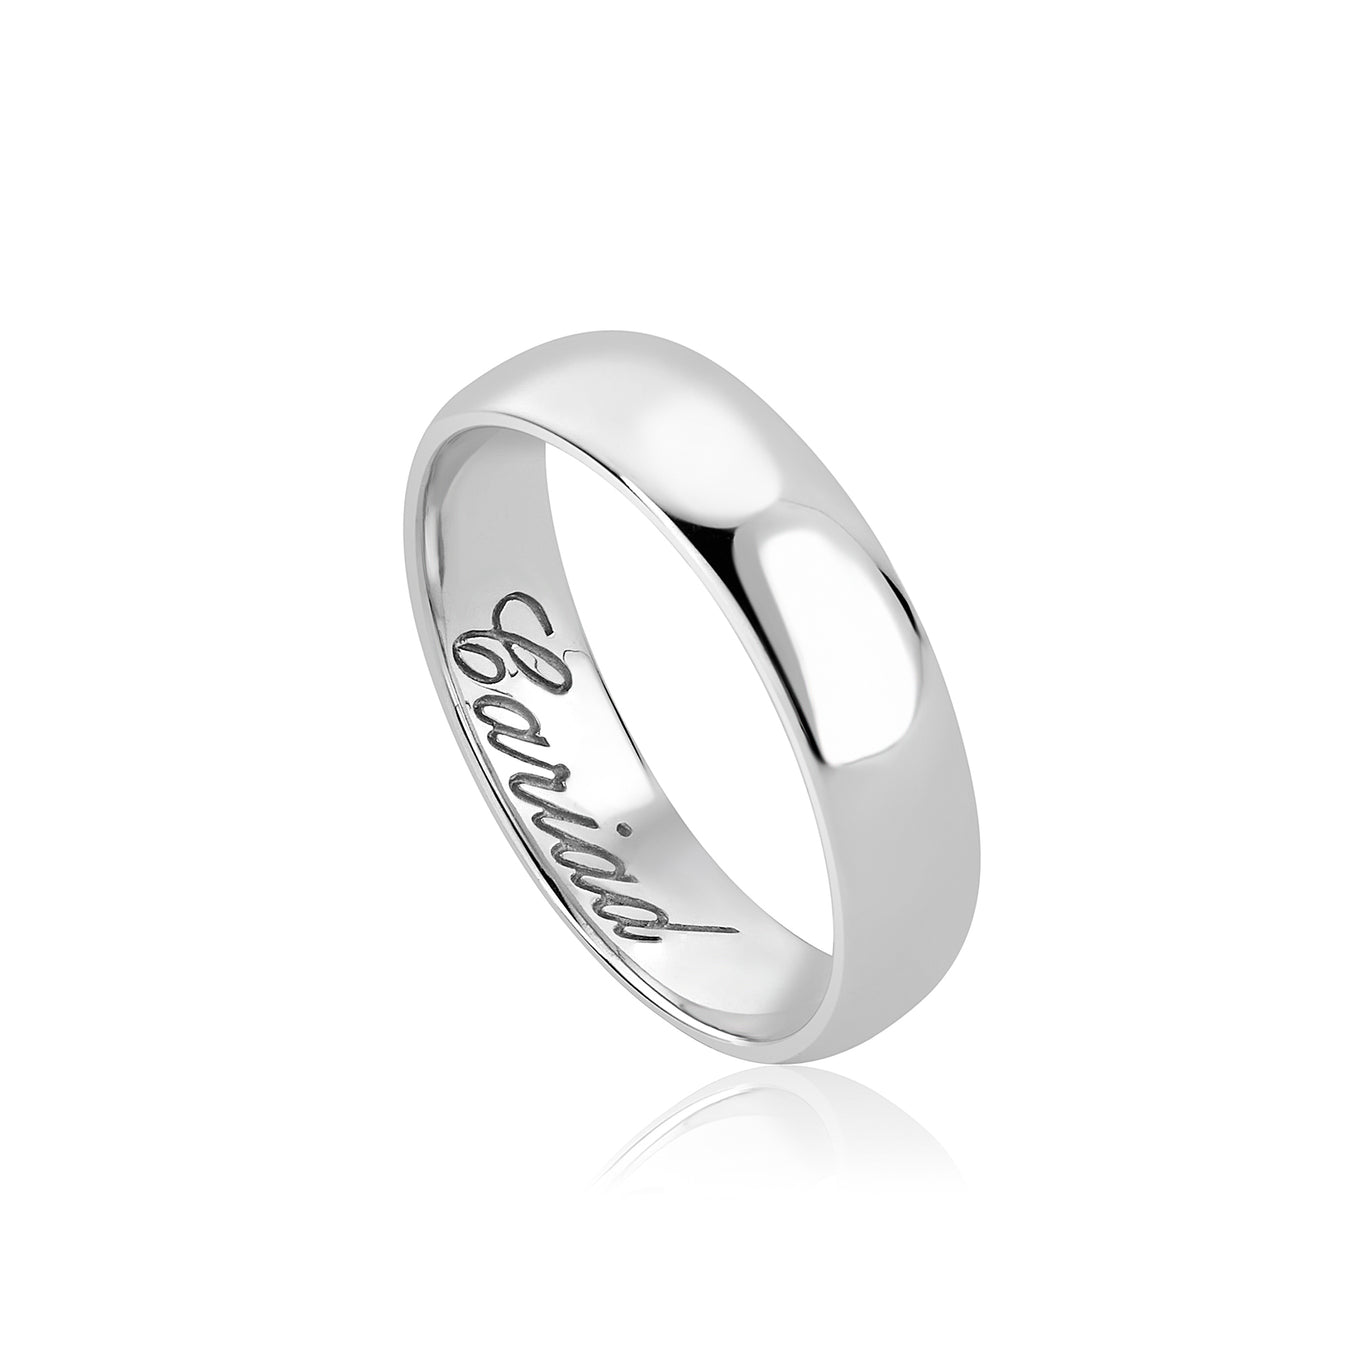 Clogau 5mm Windsor Wedding Ring